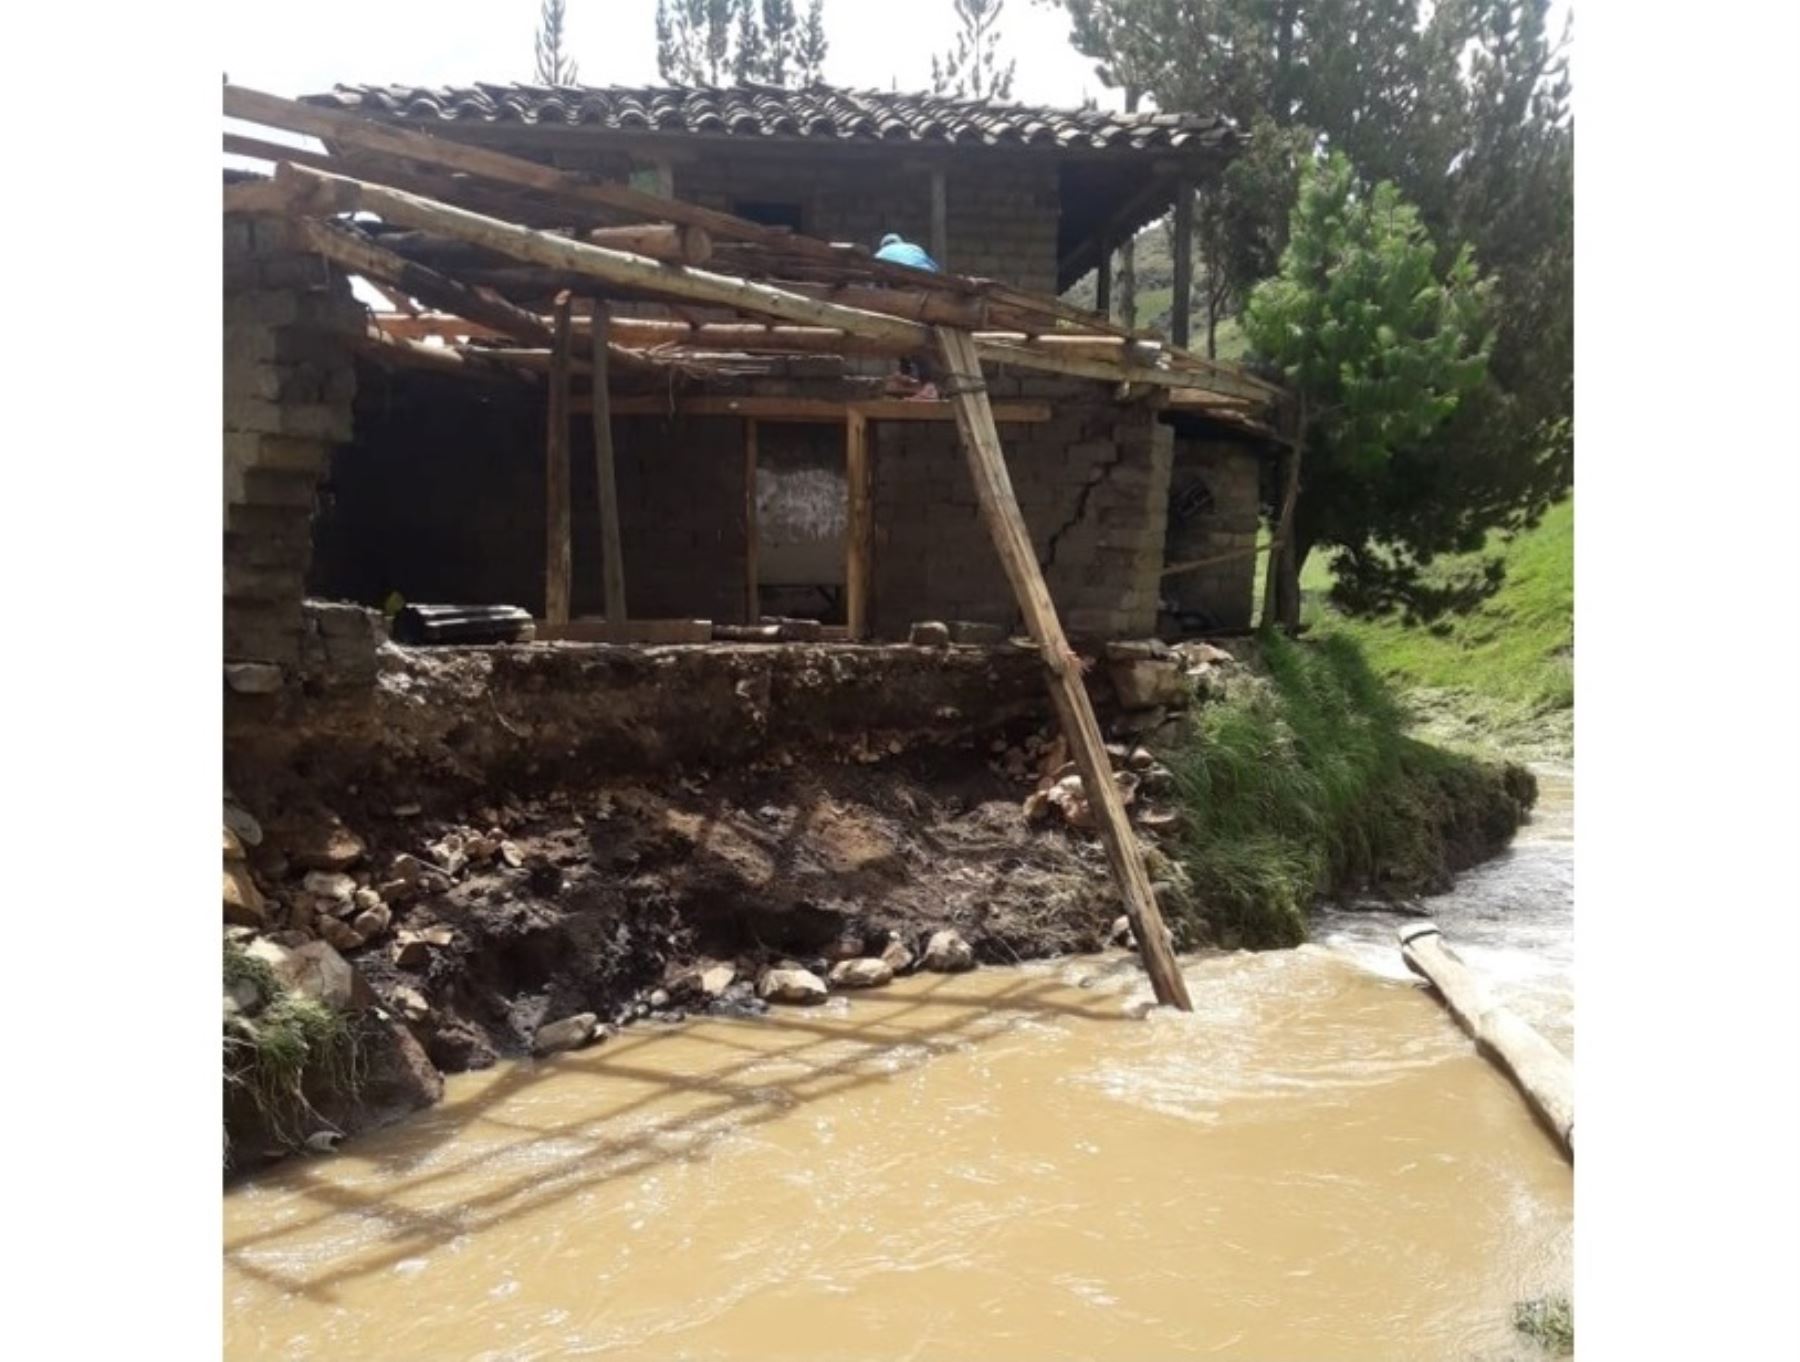 Lluvias intensas causaron cuantiosos daños en viviendas, locales públicos e infraestructura en las regiones Amazonas, Ayacucho y Piura. ANDINA/Difusión